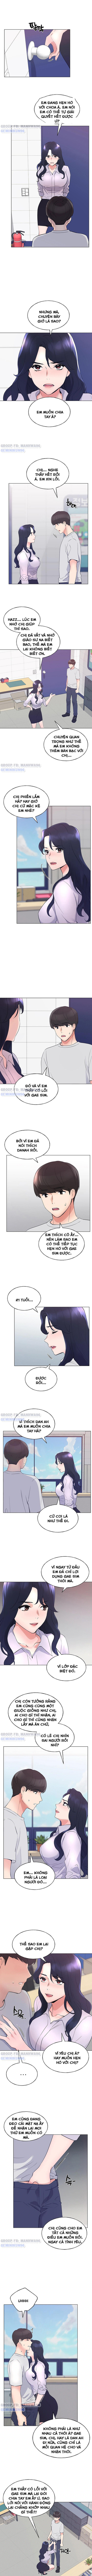 Unlucky Girl - Cô Nàng Xui Xẻo Chapter 89 - Trang 3